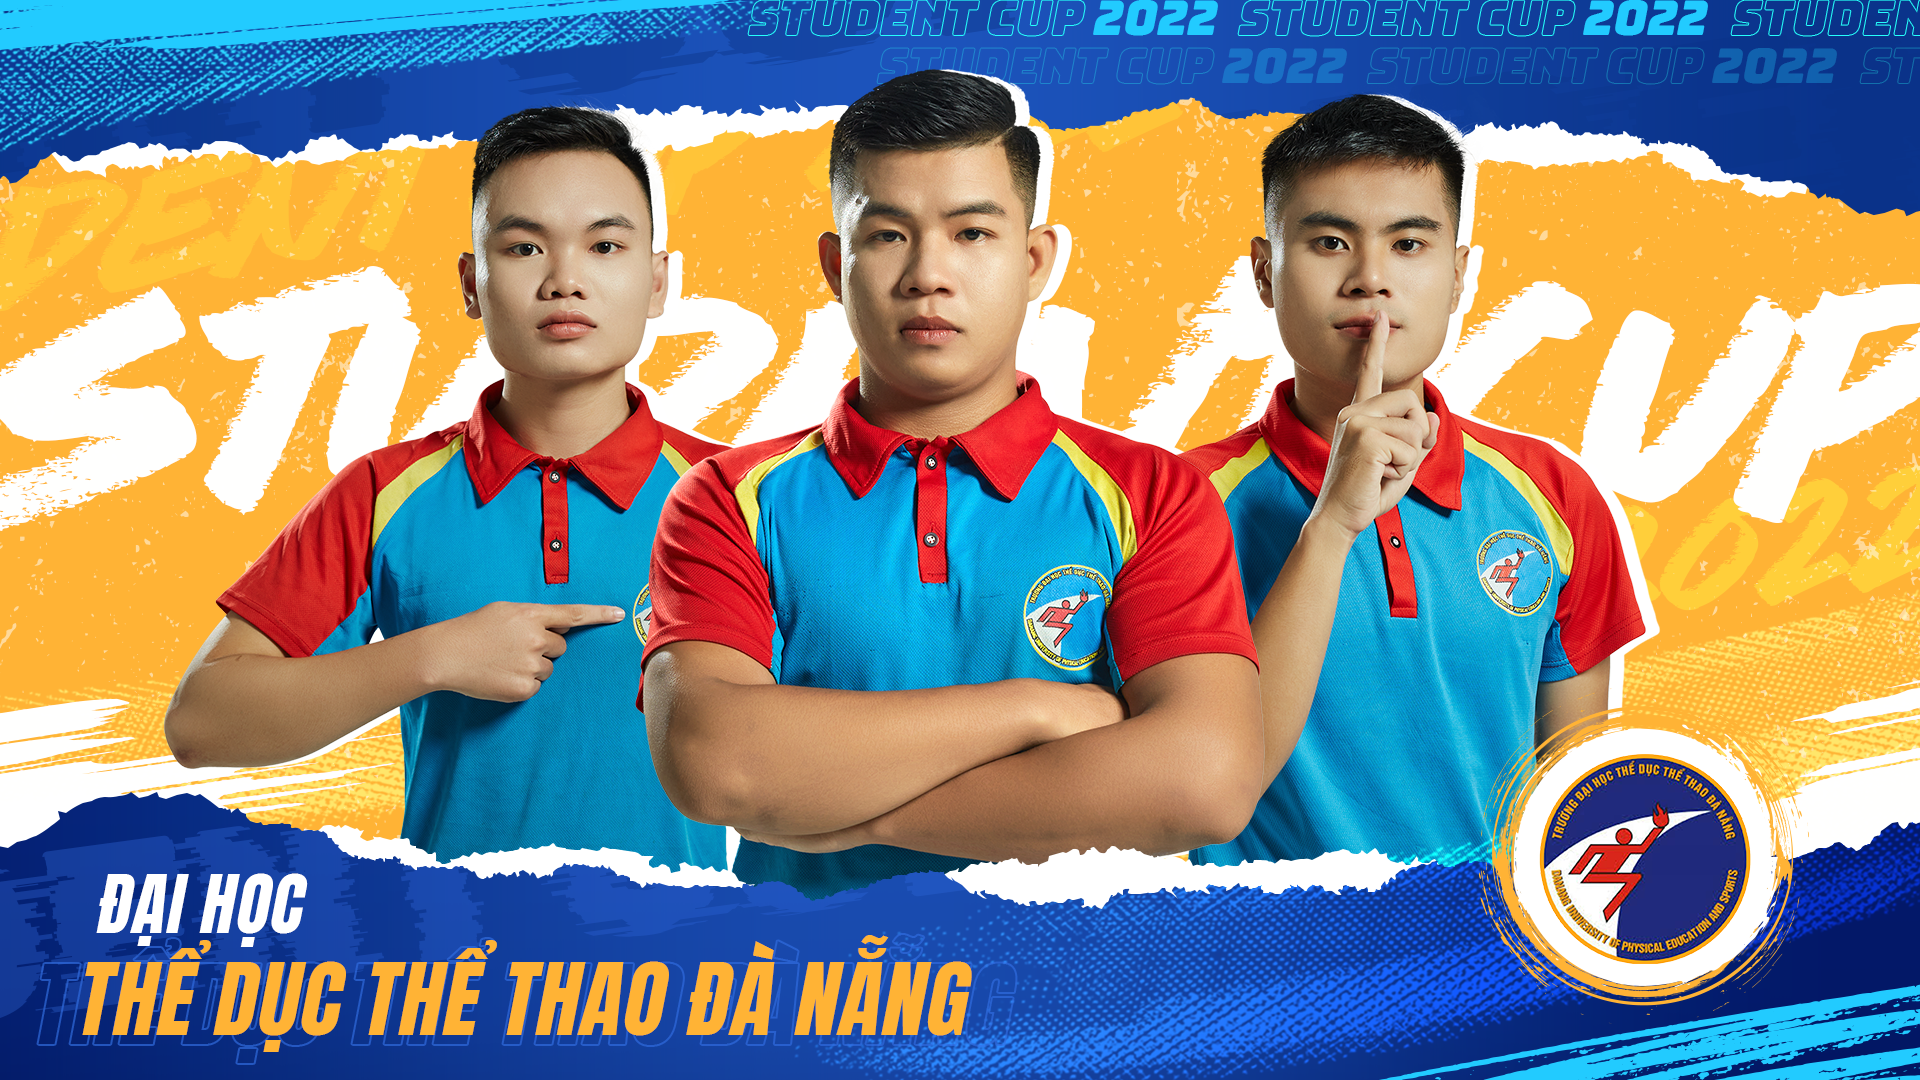 Top 8 mạnh nhất lộ diện, bùng nổ giải đấu FIFA Online 4 hàng đầu dành cho sinh viên Việt Nam - ảnh 9